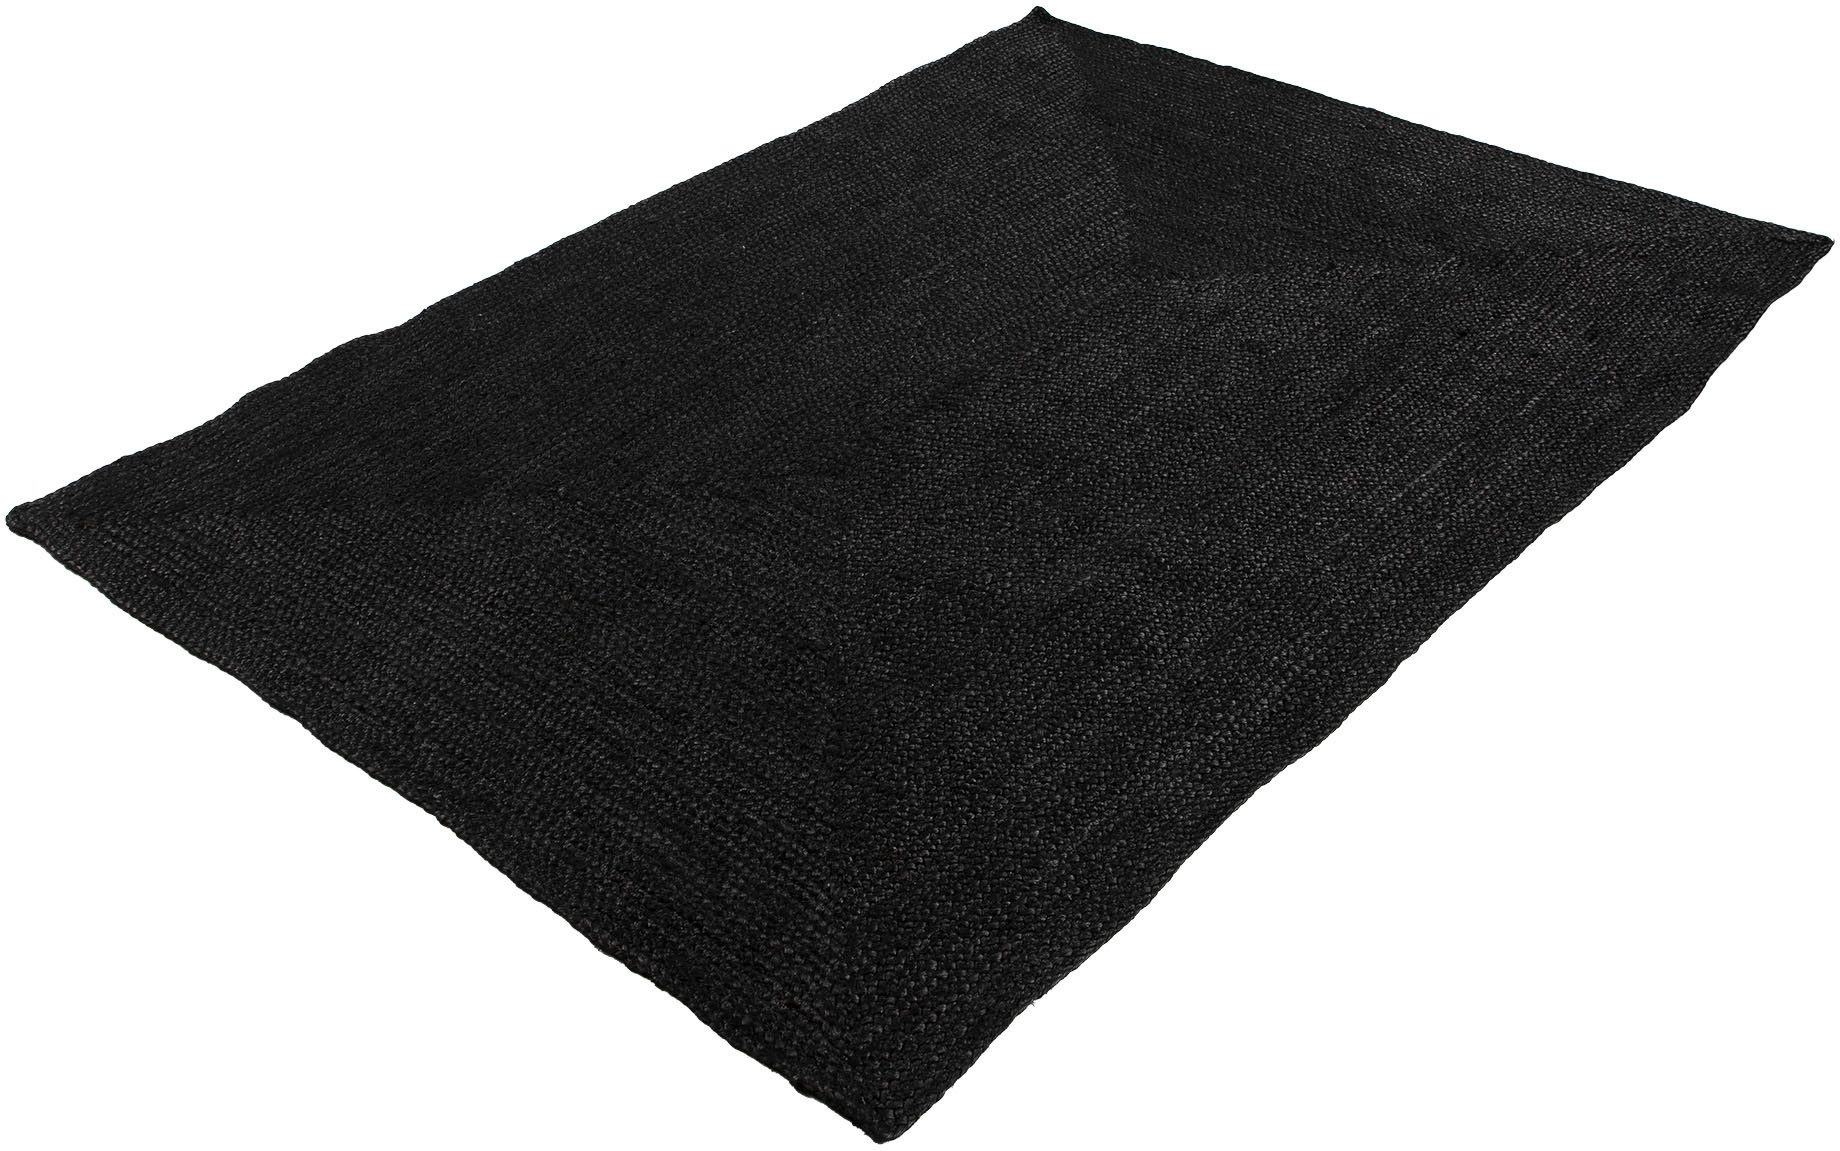 Carpetfine Vloerkleed Nele jute-vloerkleed natuurmateriaal gevlochten tweezijdig te gebruiken kleed van 100% jute, vierkant en als loper